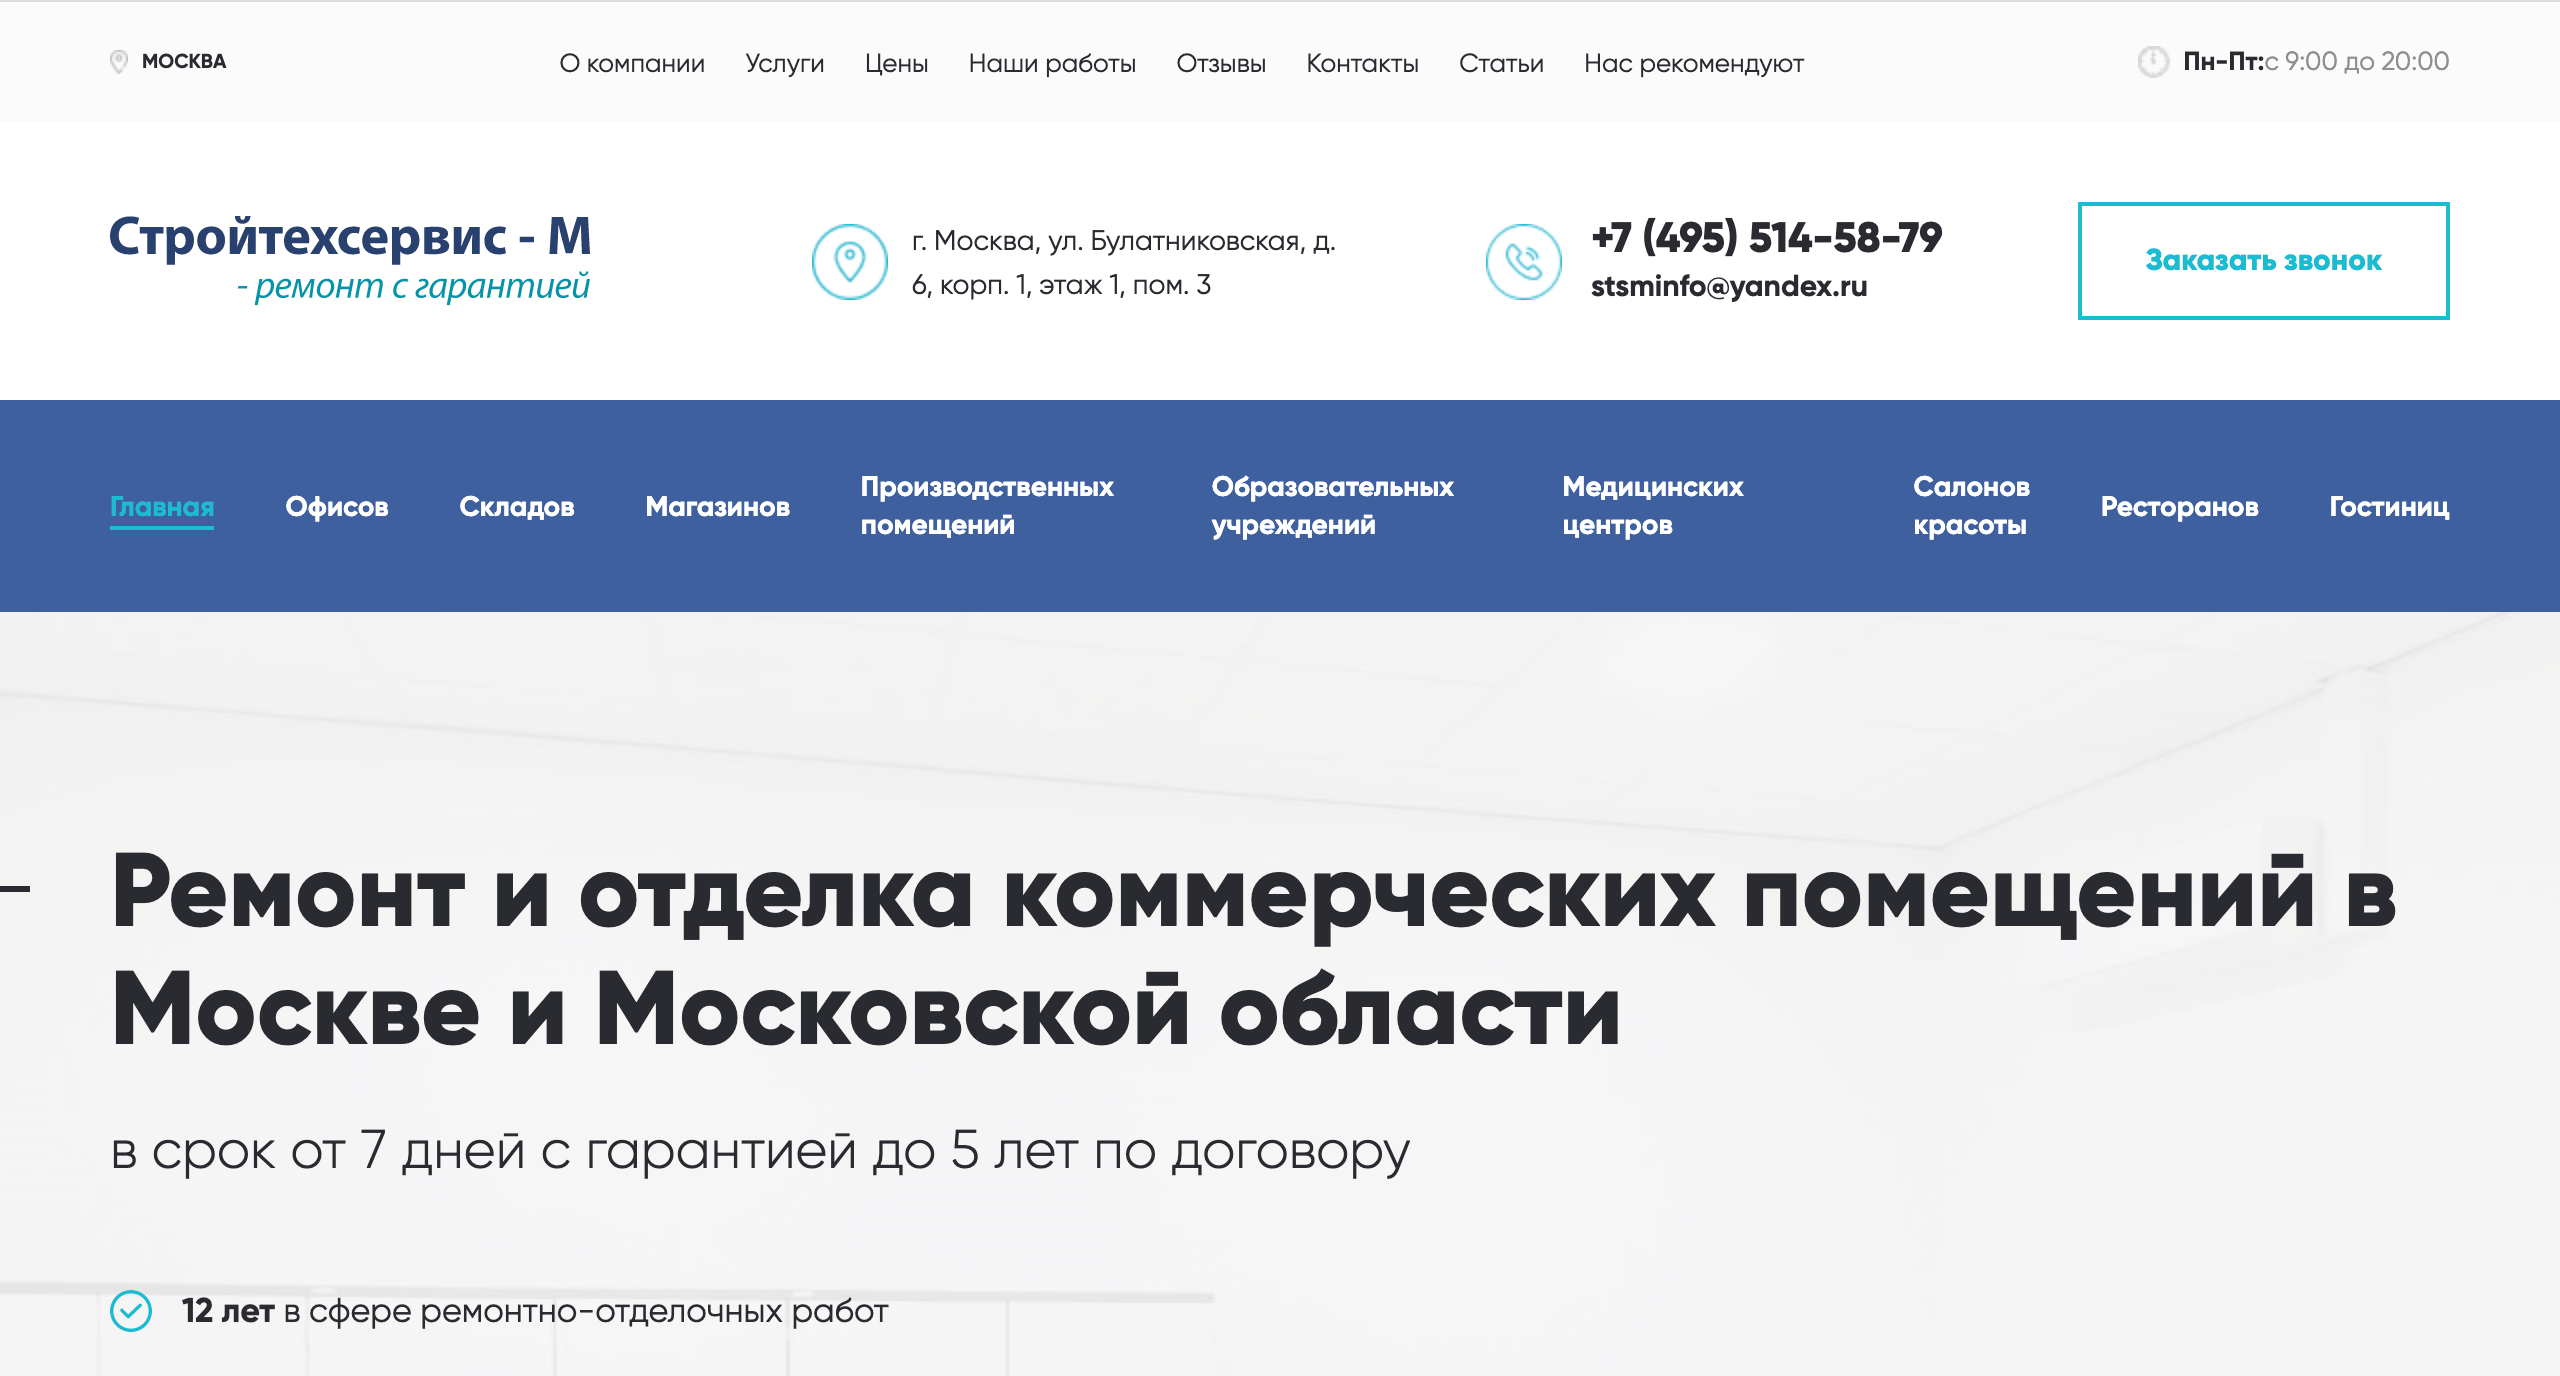 SEO продвижение строительного сайта в Москве